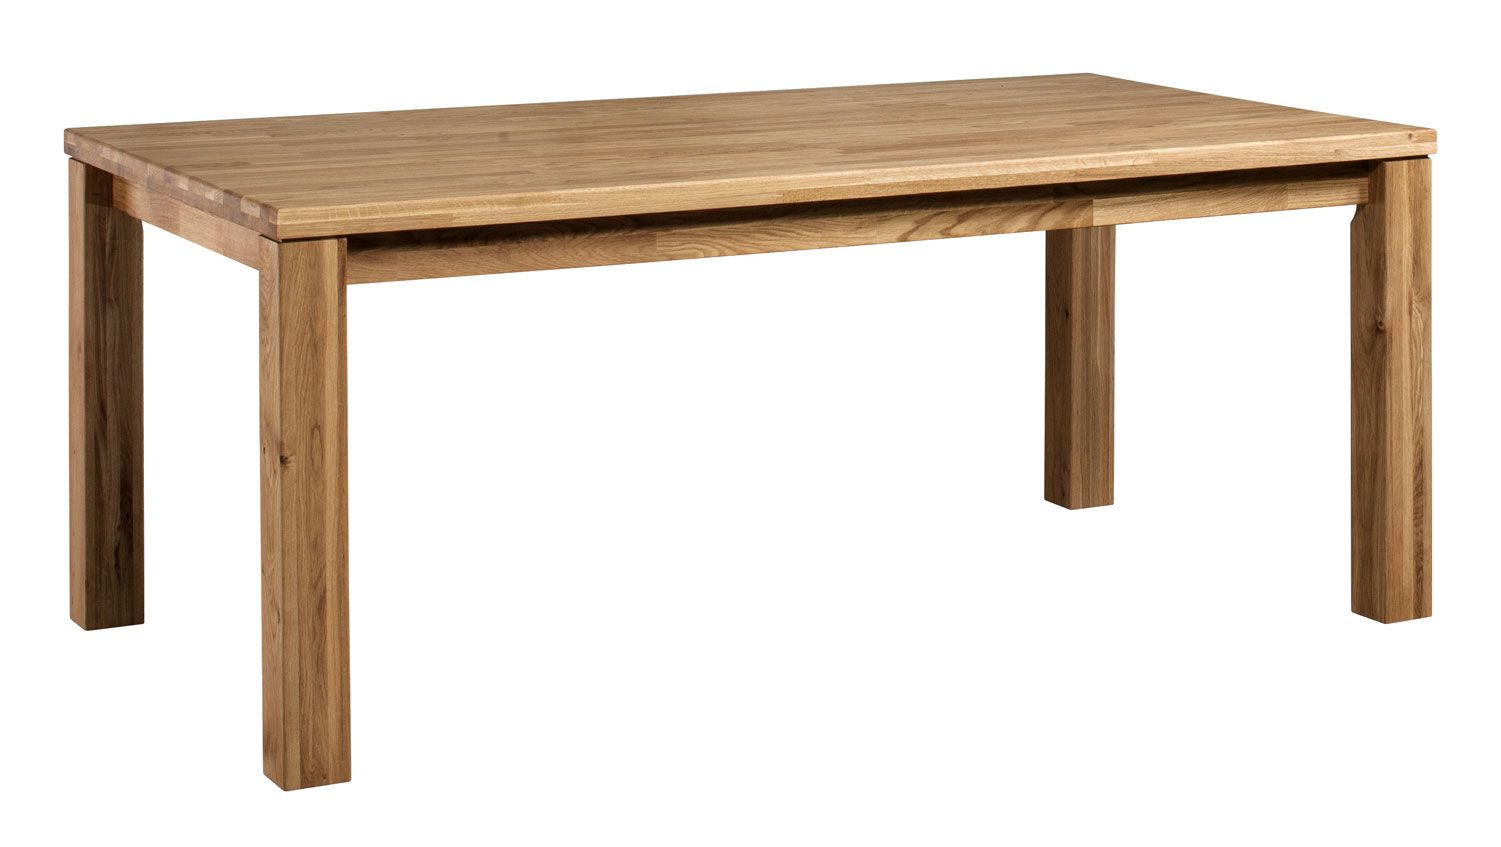 Table de salle à manger en chêne massif partiel Floresta 24, naturel, huilé / ciré, 180 x 100 cm, surface brossée, robuste et durable, pour la salle à manger